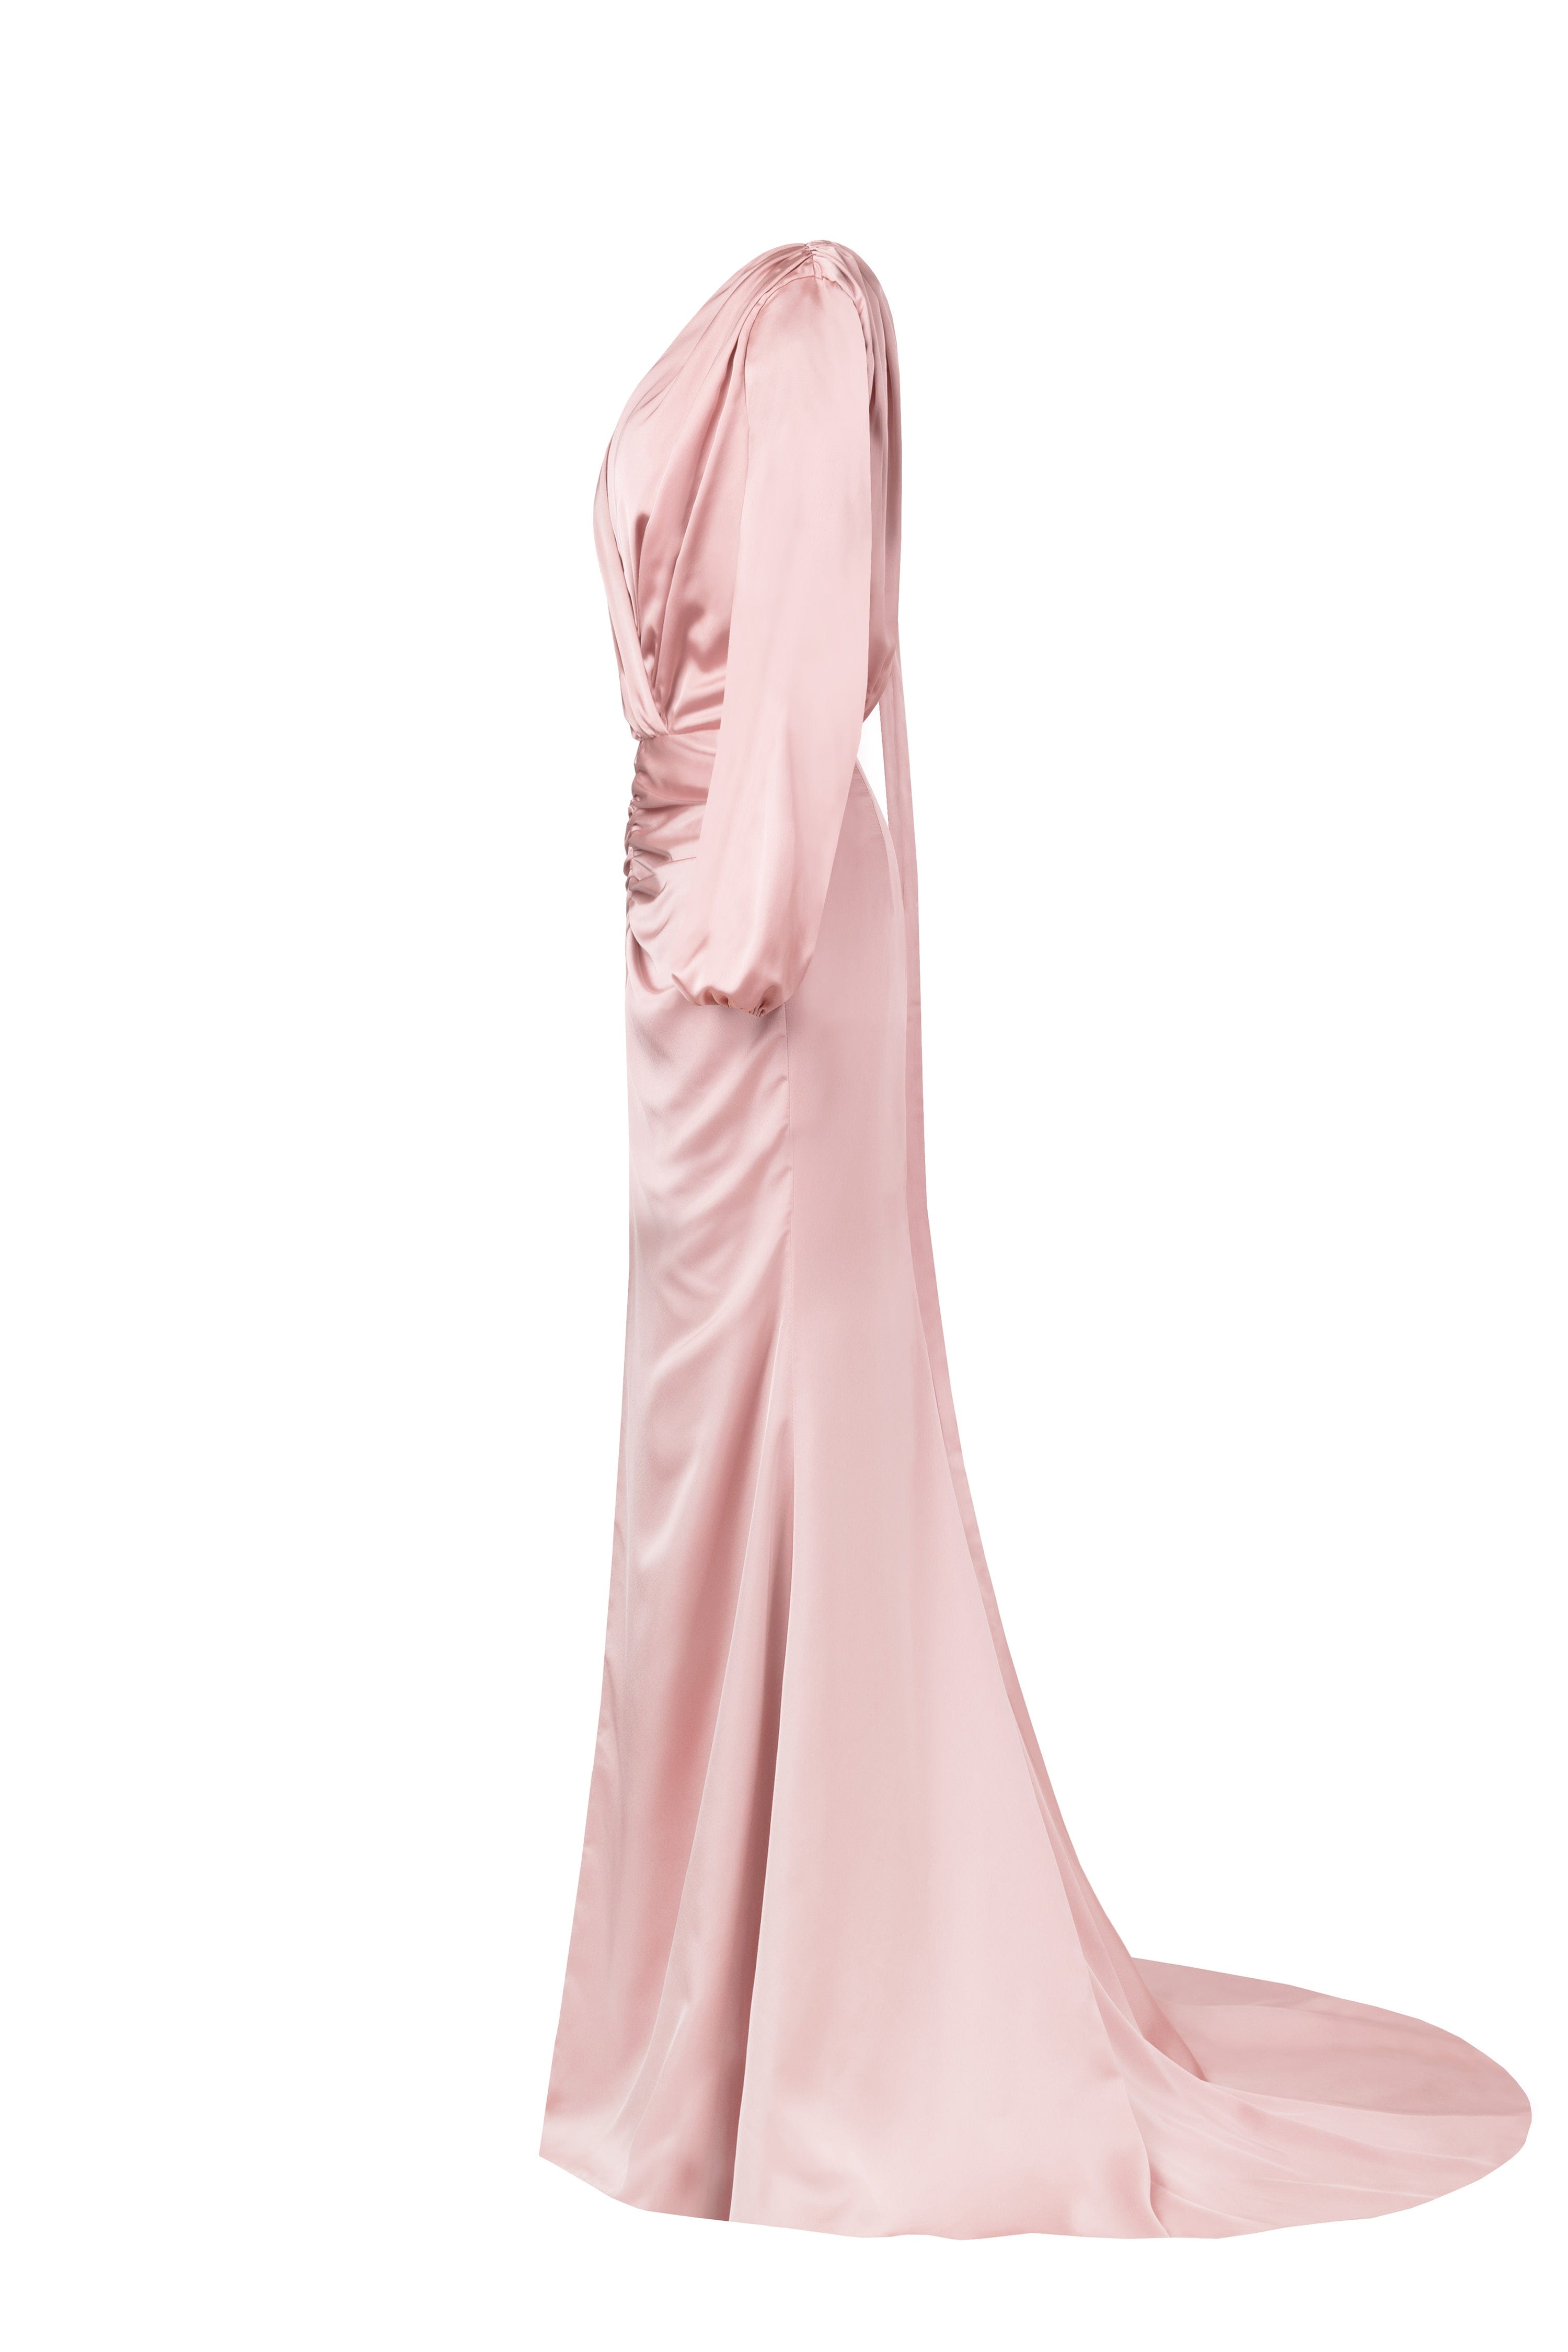 فستان سهرة طويل من الحرير الوردي الغامق